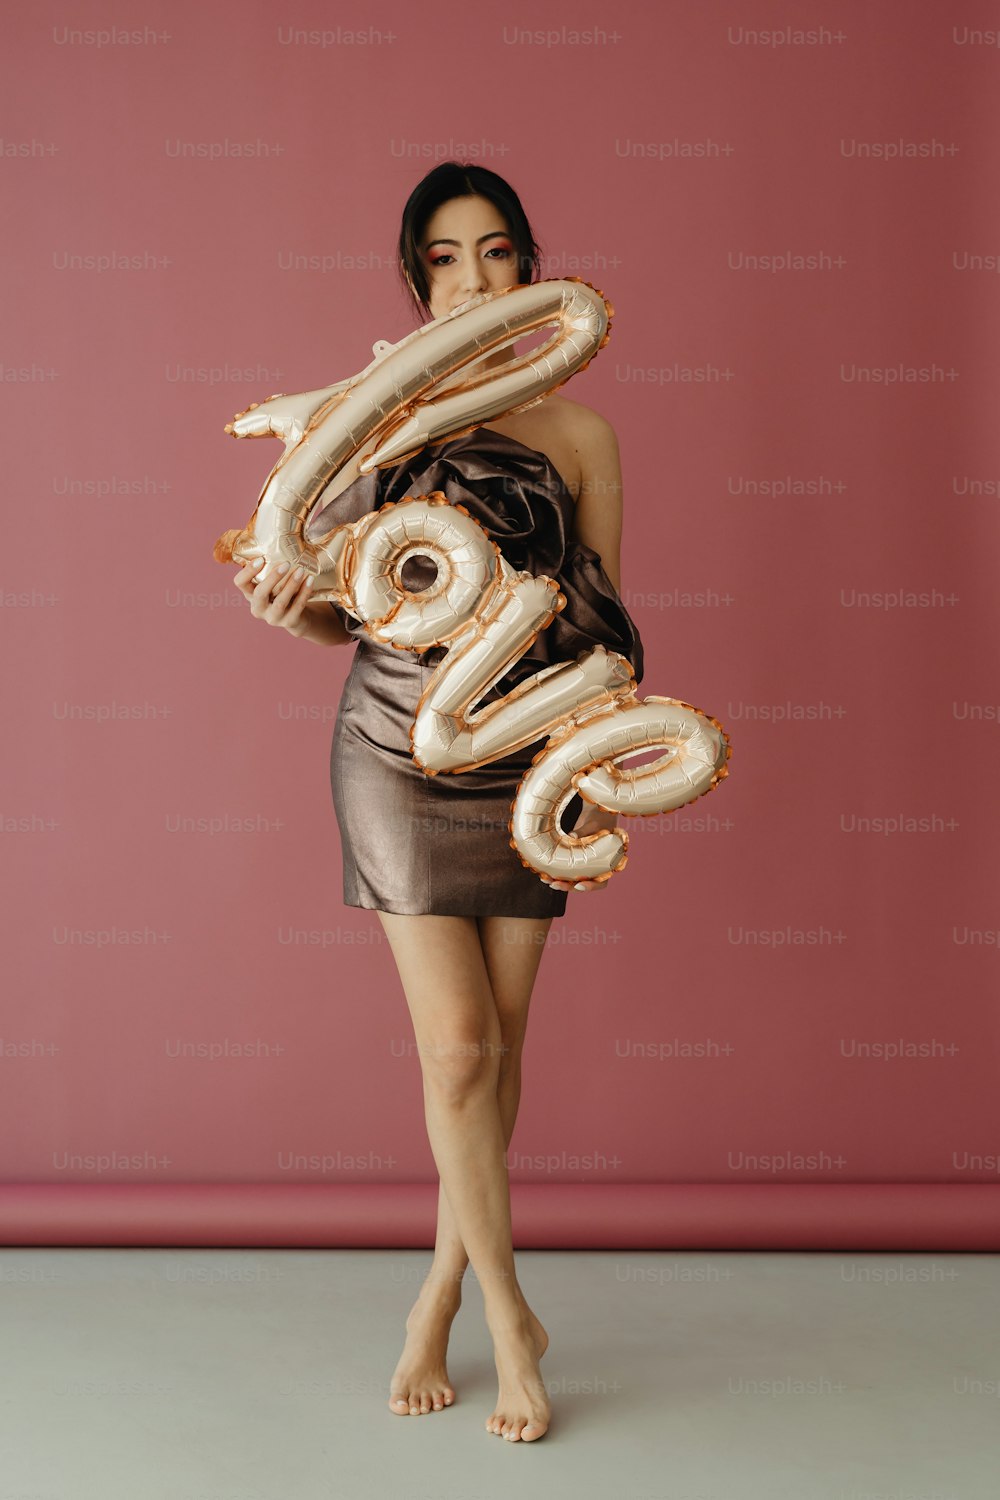 Eine Frau in einem kurzen Kleid, die einen großen Zahlenballon hält